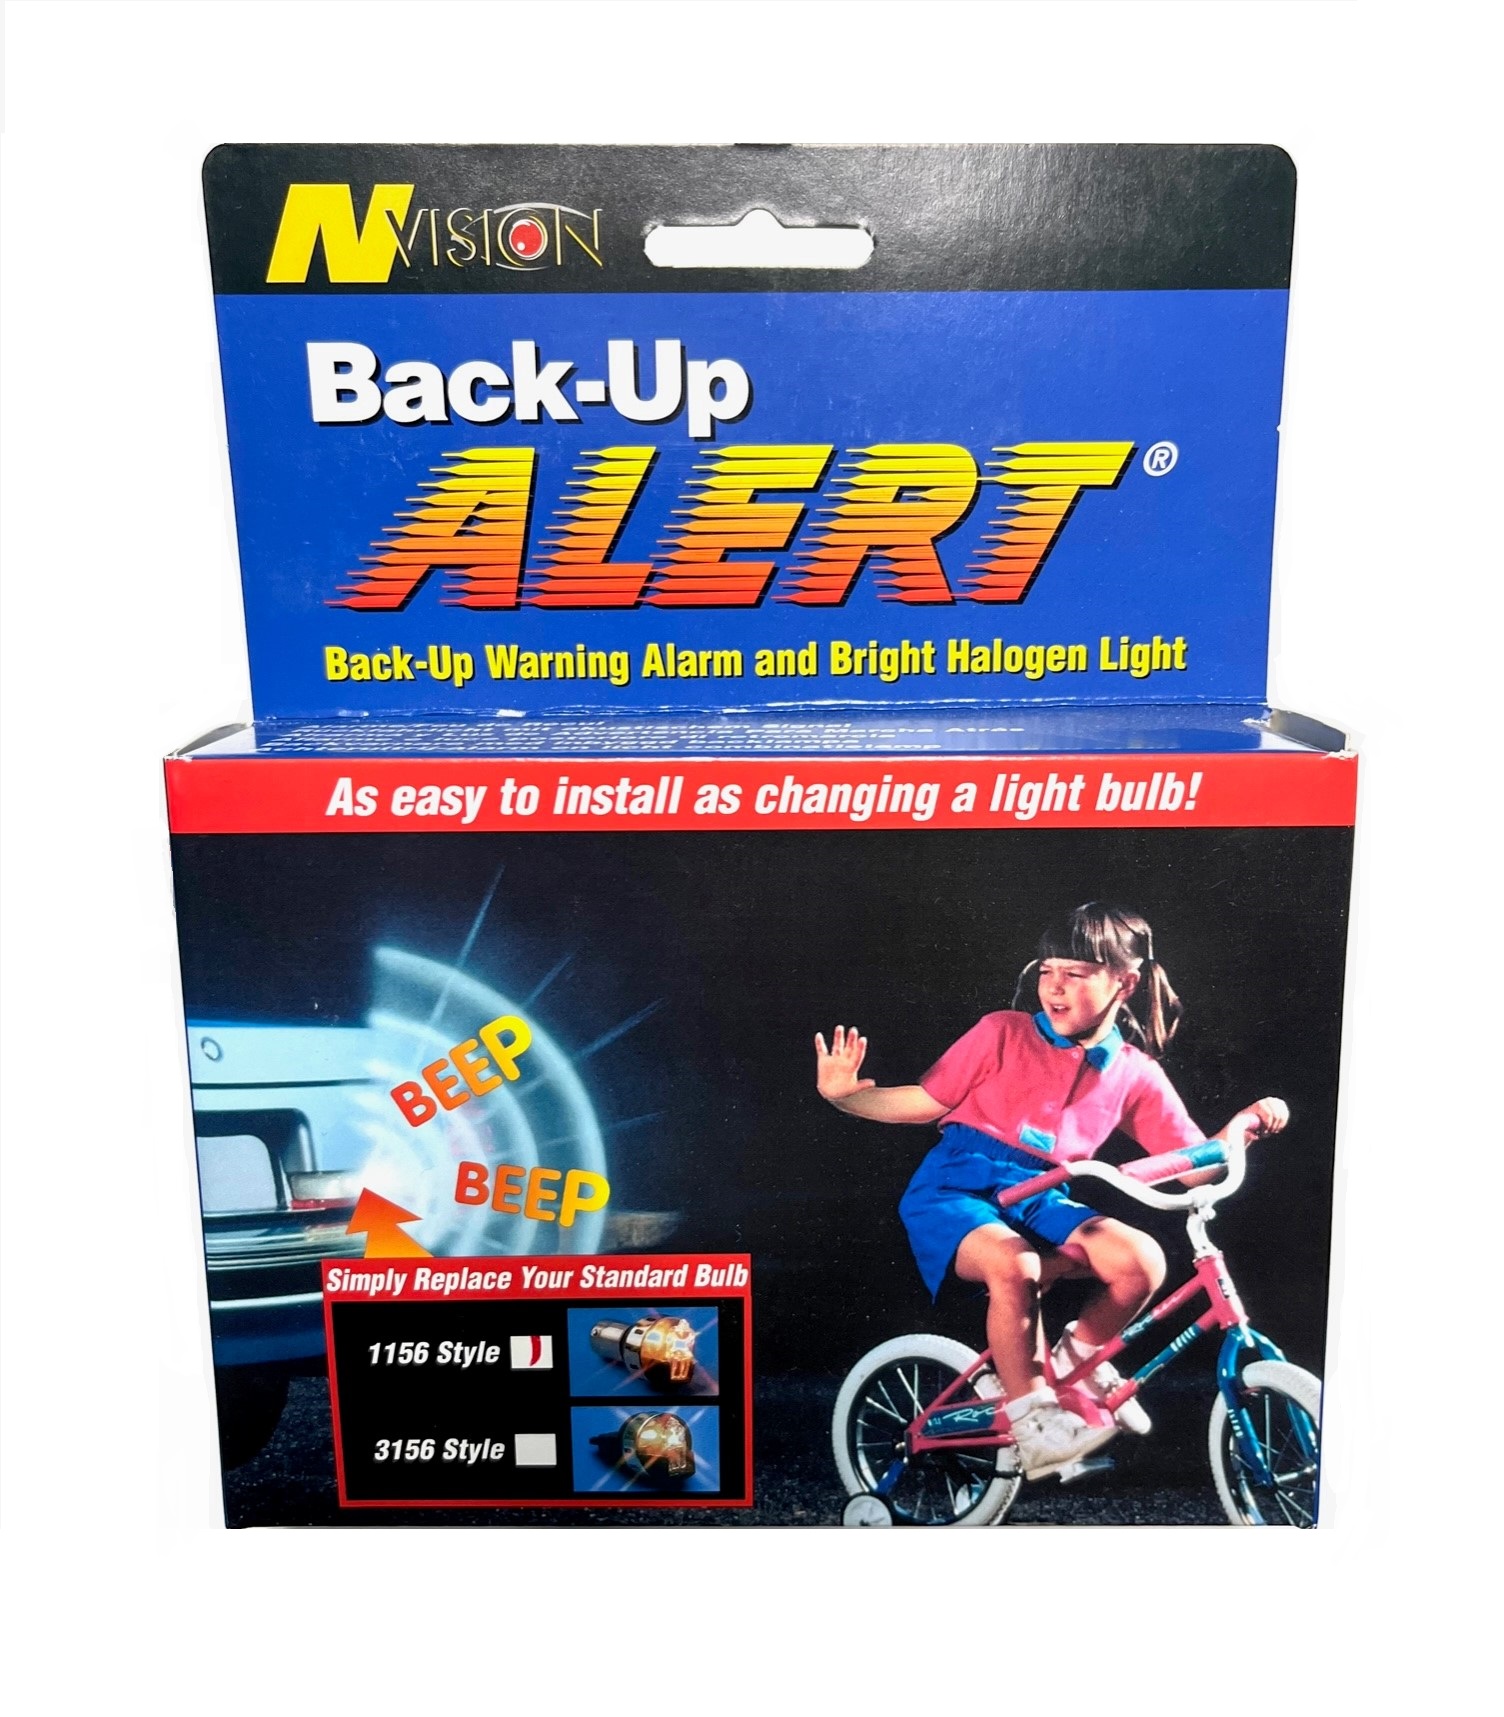 Back-Up Alert Light 1156 Style